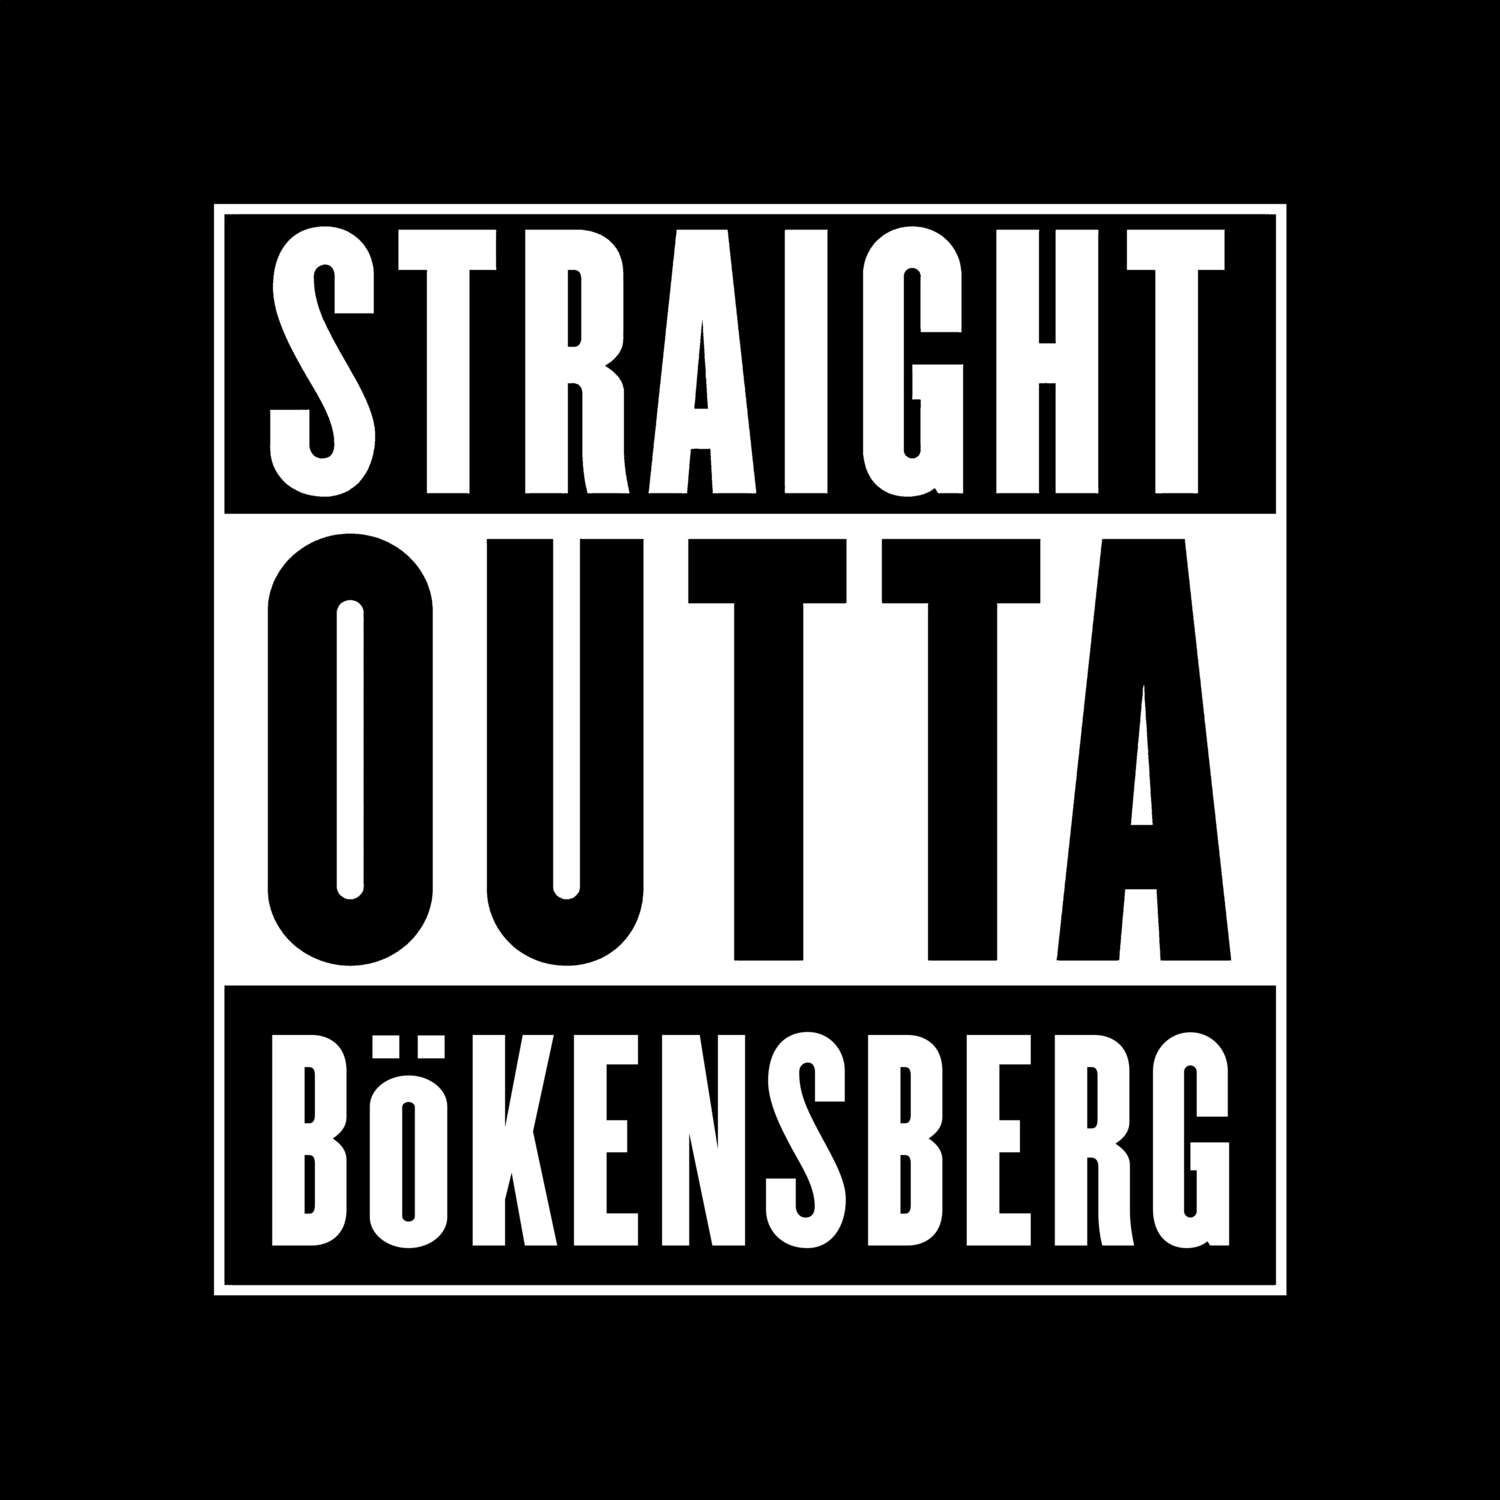 Bökensberg T-Shirt »Straight Outta«